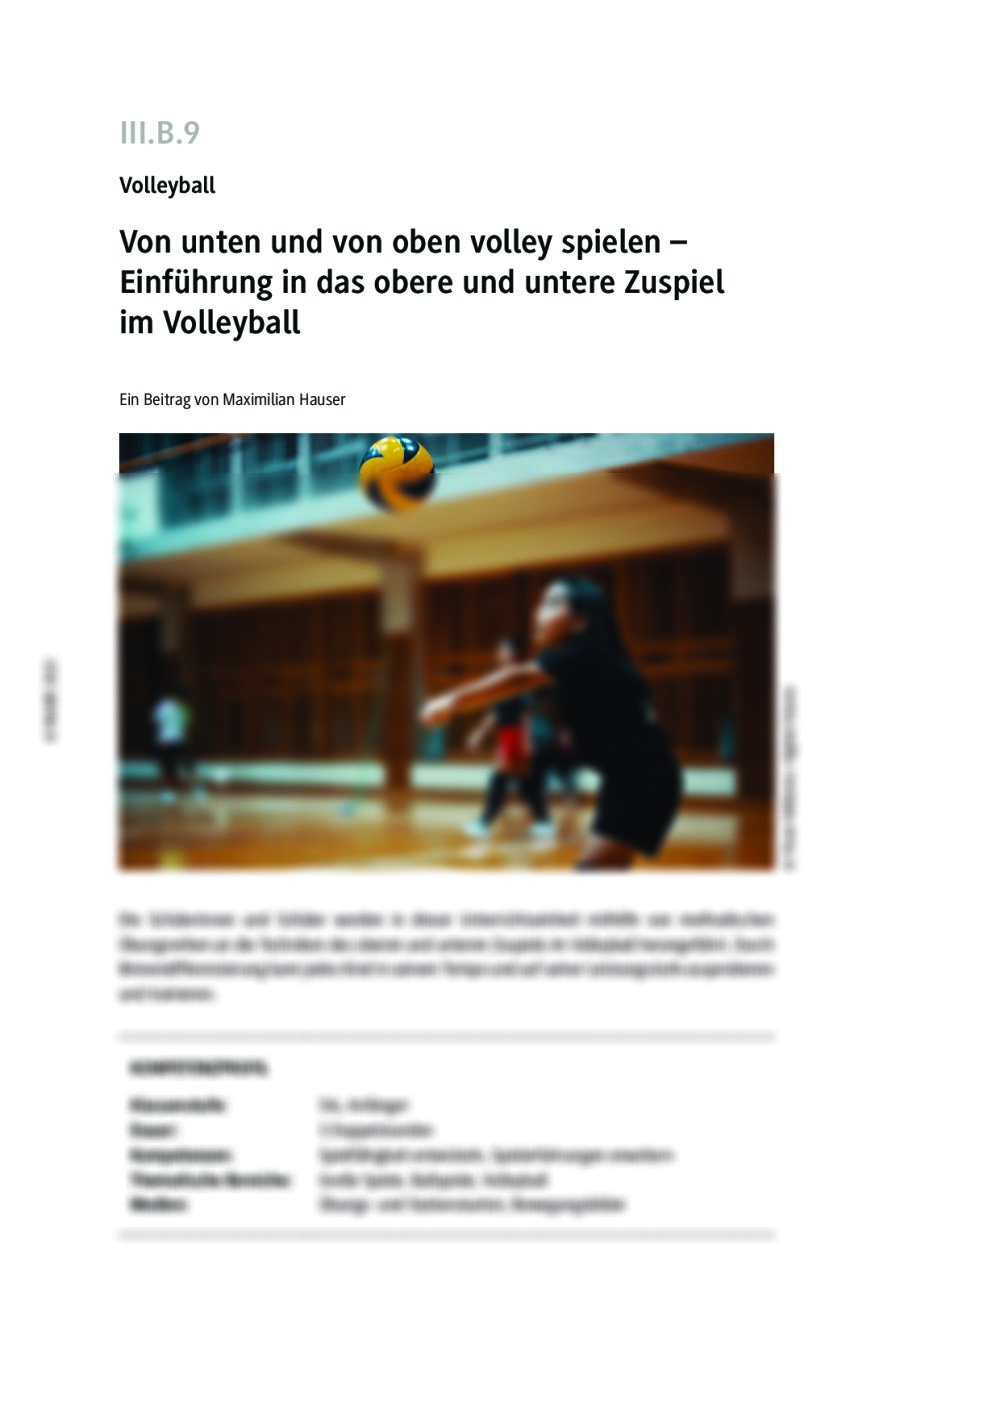 Einführung in das obere und untere Zuspiel im Volleyball - Seite 1